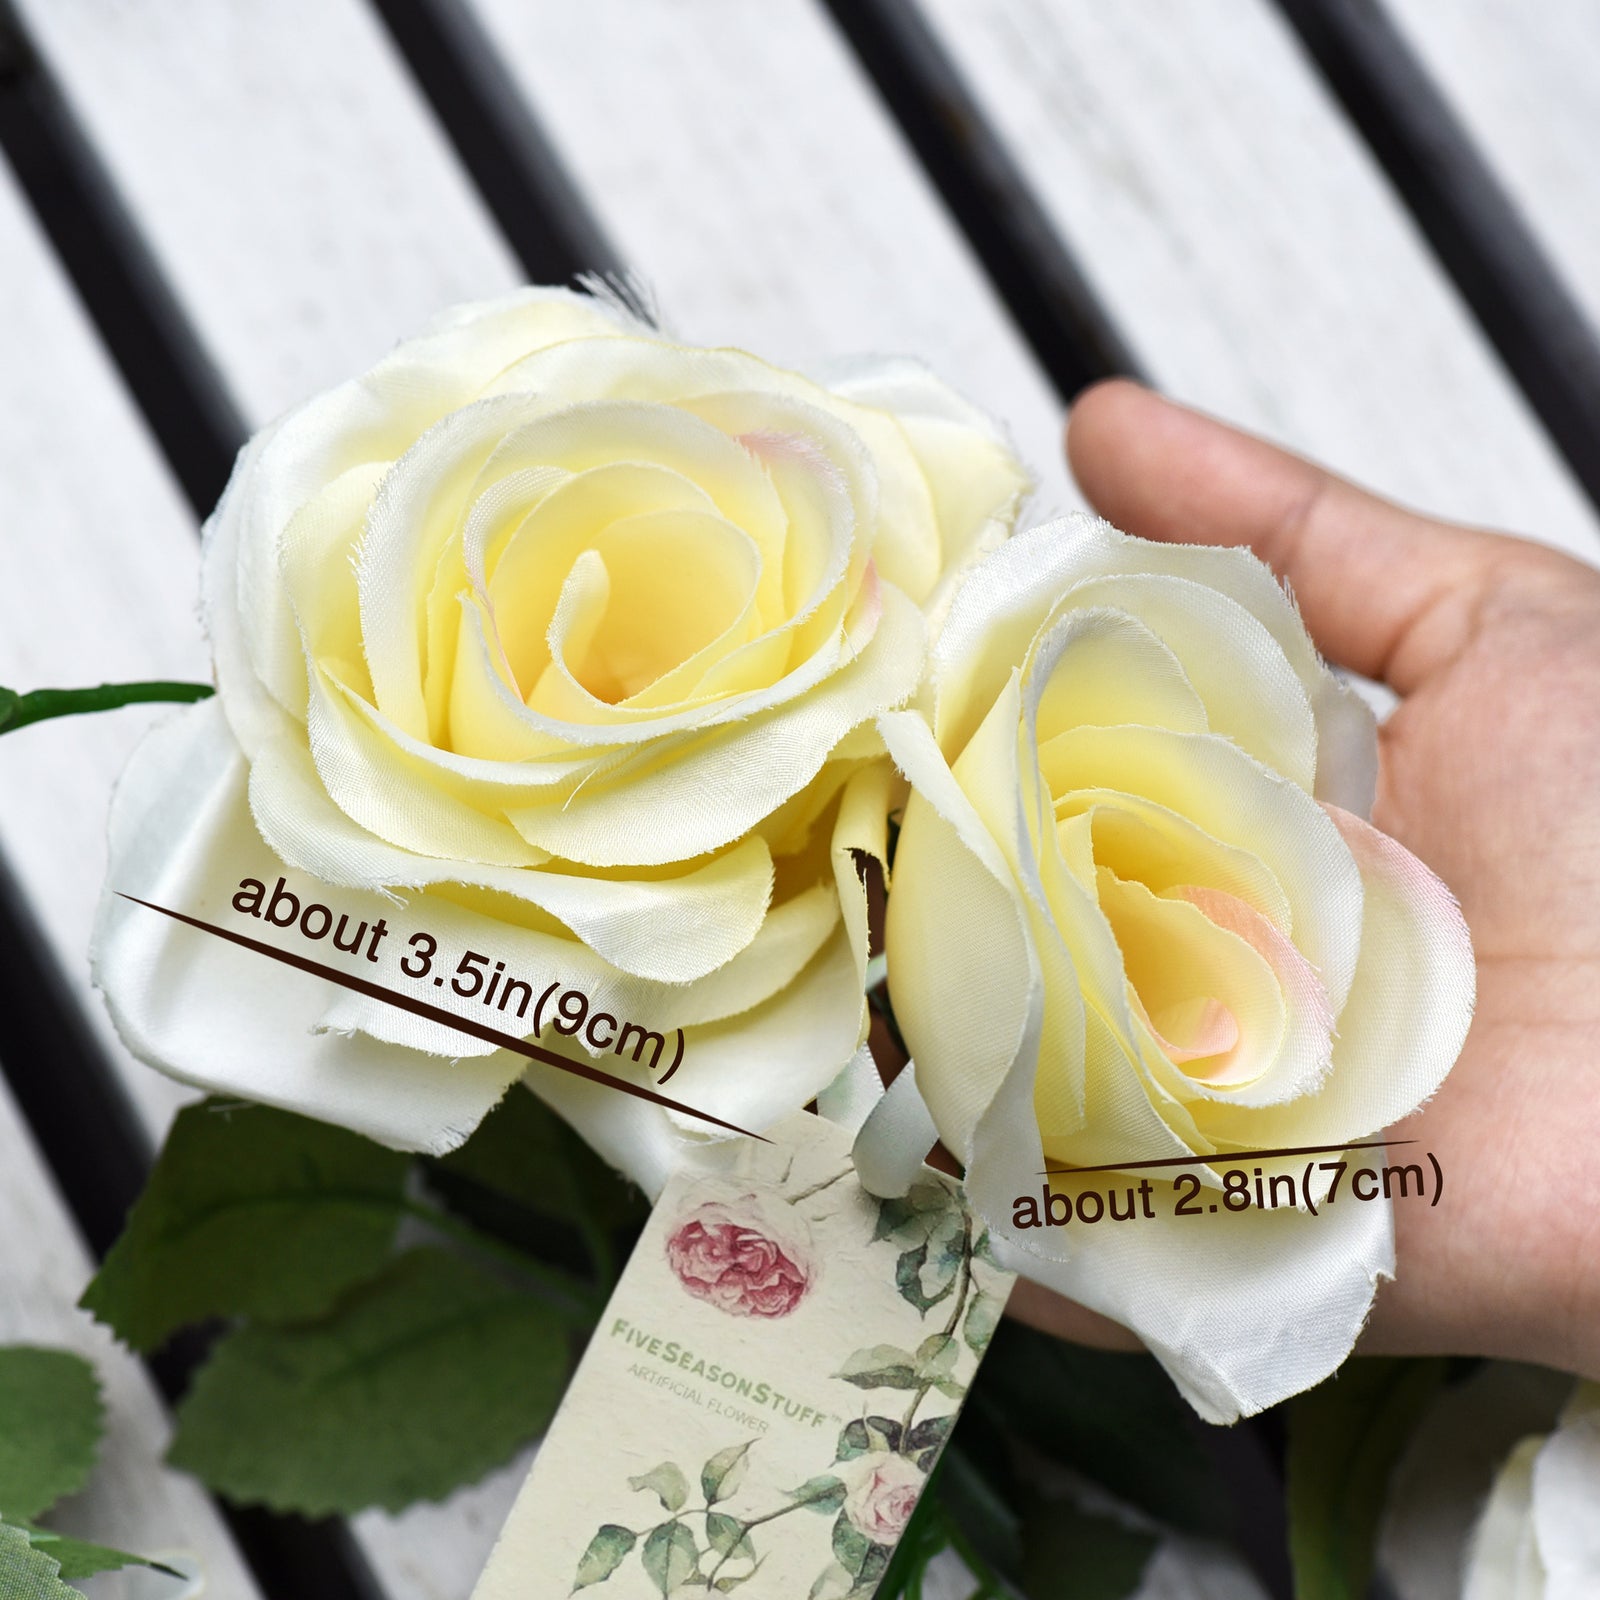 Burlap Natural Mini Rose Flower Stems, Rustic Wedding Favors